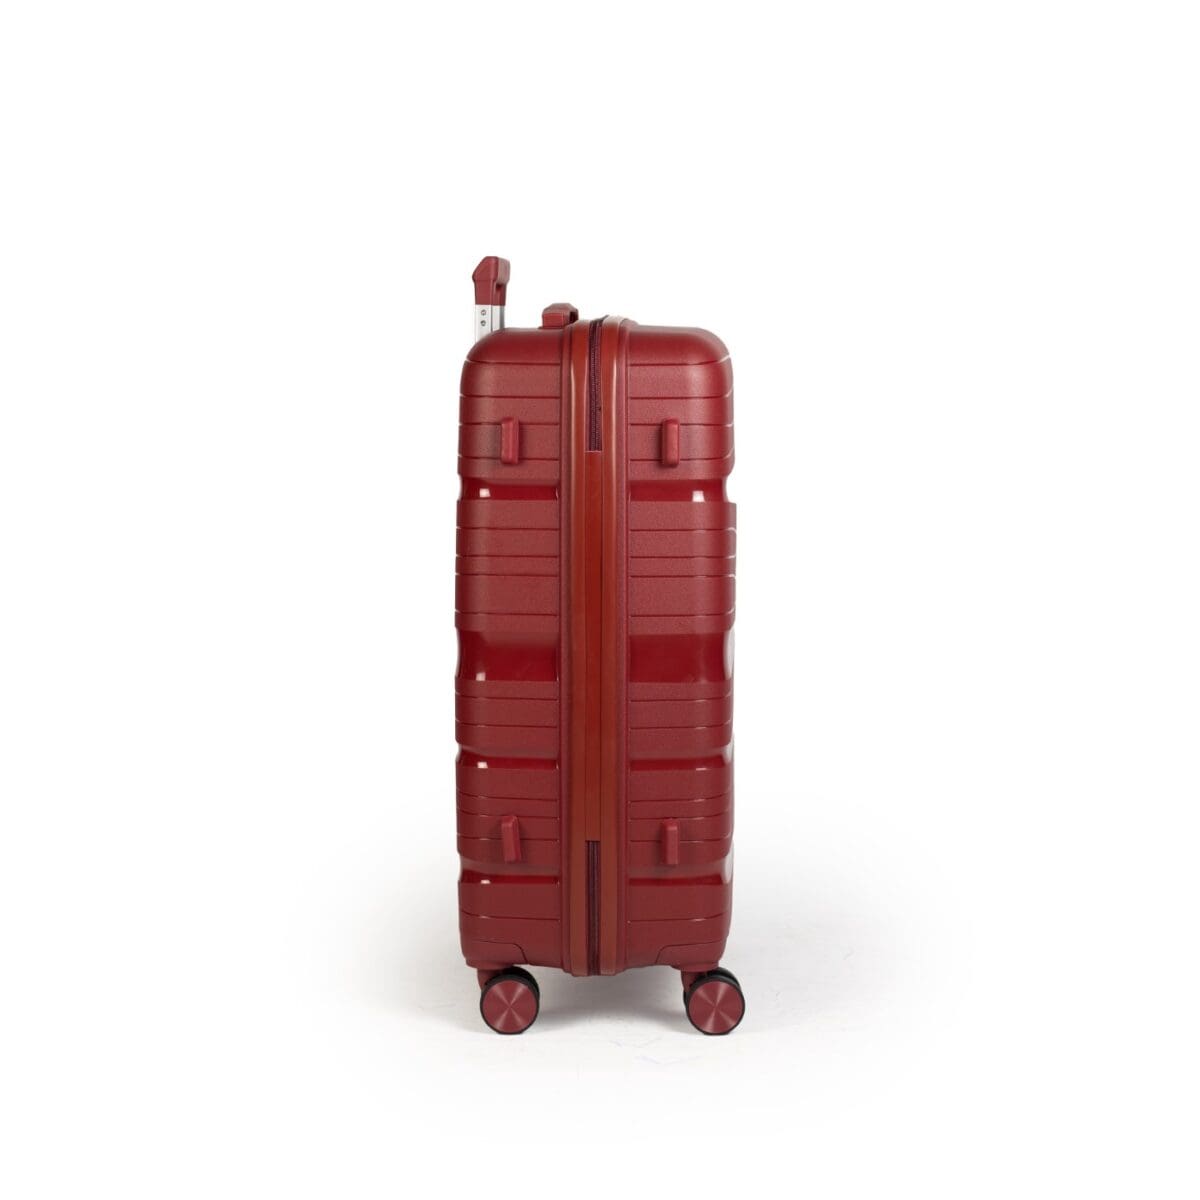 Δεξιά πλευρά βαλίτσας με πατόκουμπα σε μπορντό χρώμα